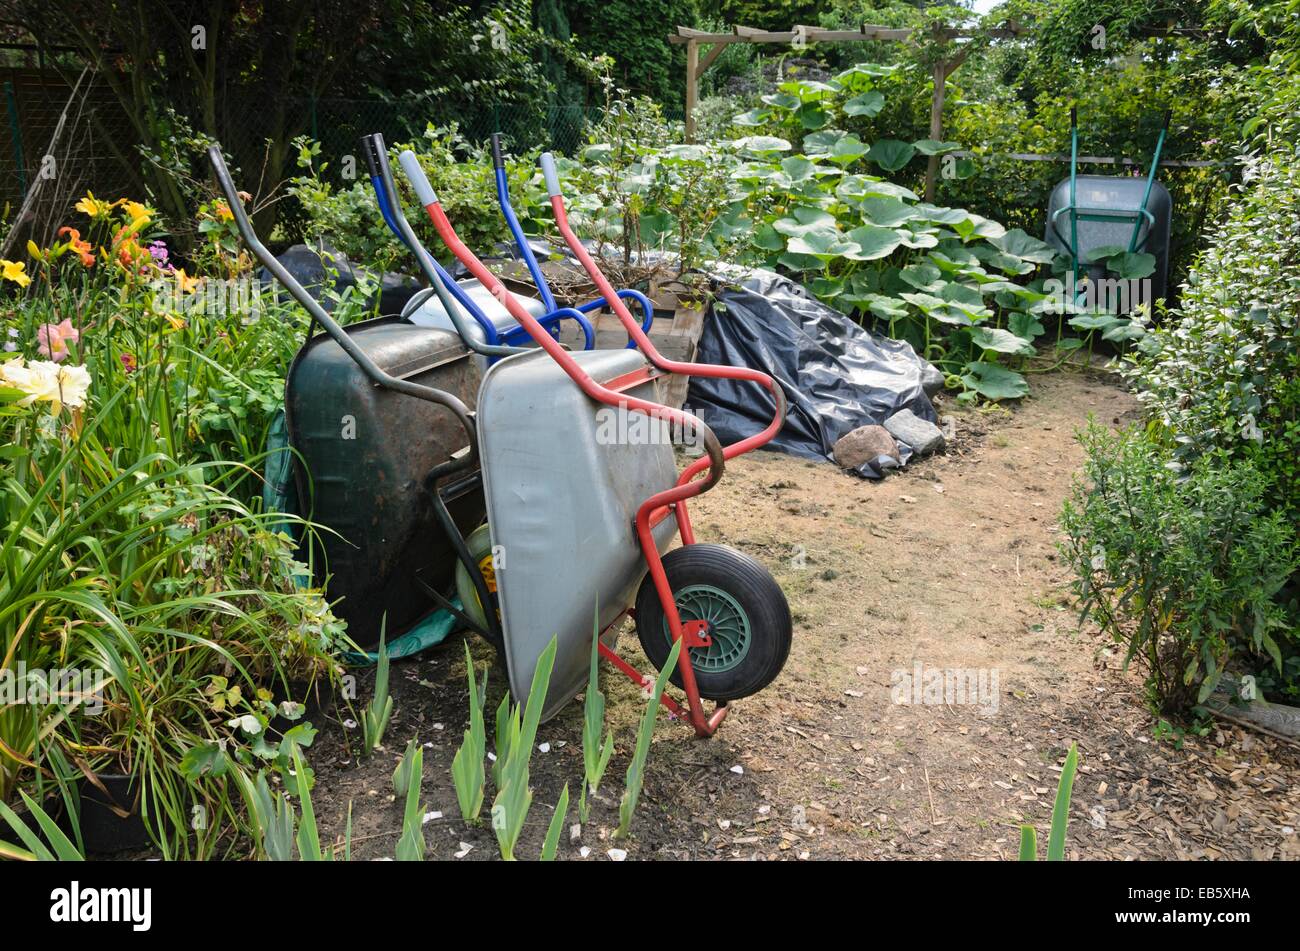 Lieu de travail dans un jardin avec des brouettes. design : Marianne et detlef lüdke Banque D'Images